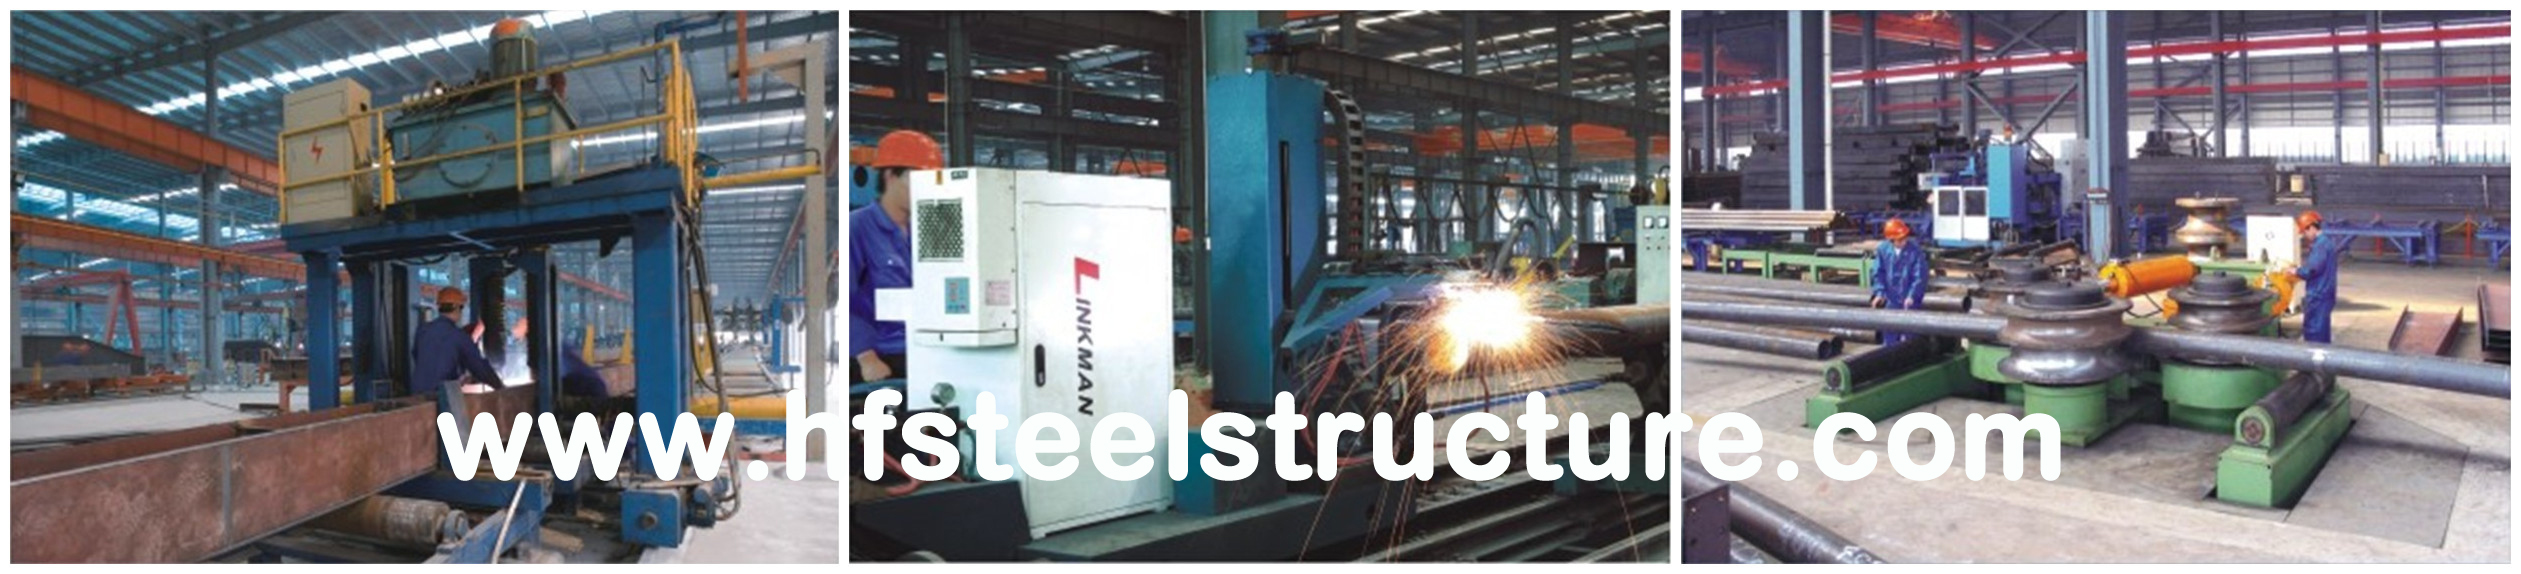 Construções de aço industriais do metal pré-fabricado do OEM para armazenar tratores e equipamento agrícola